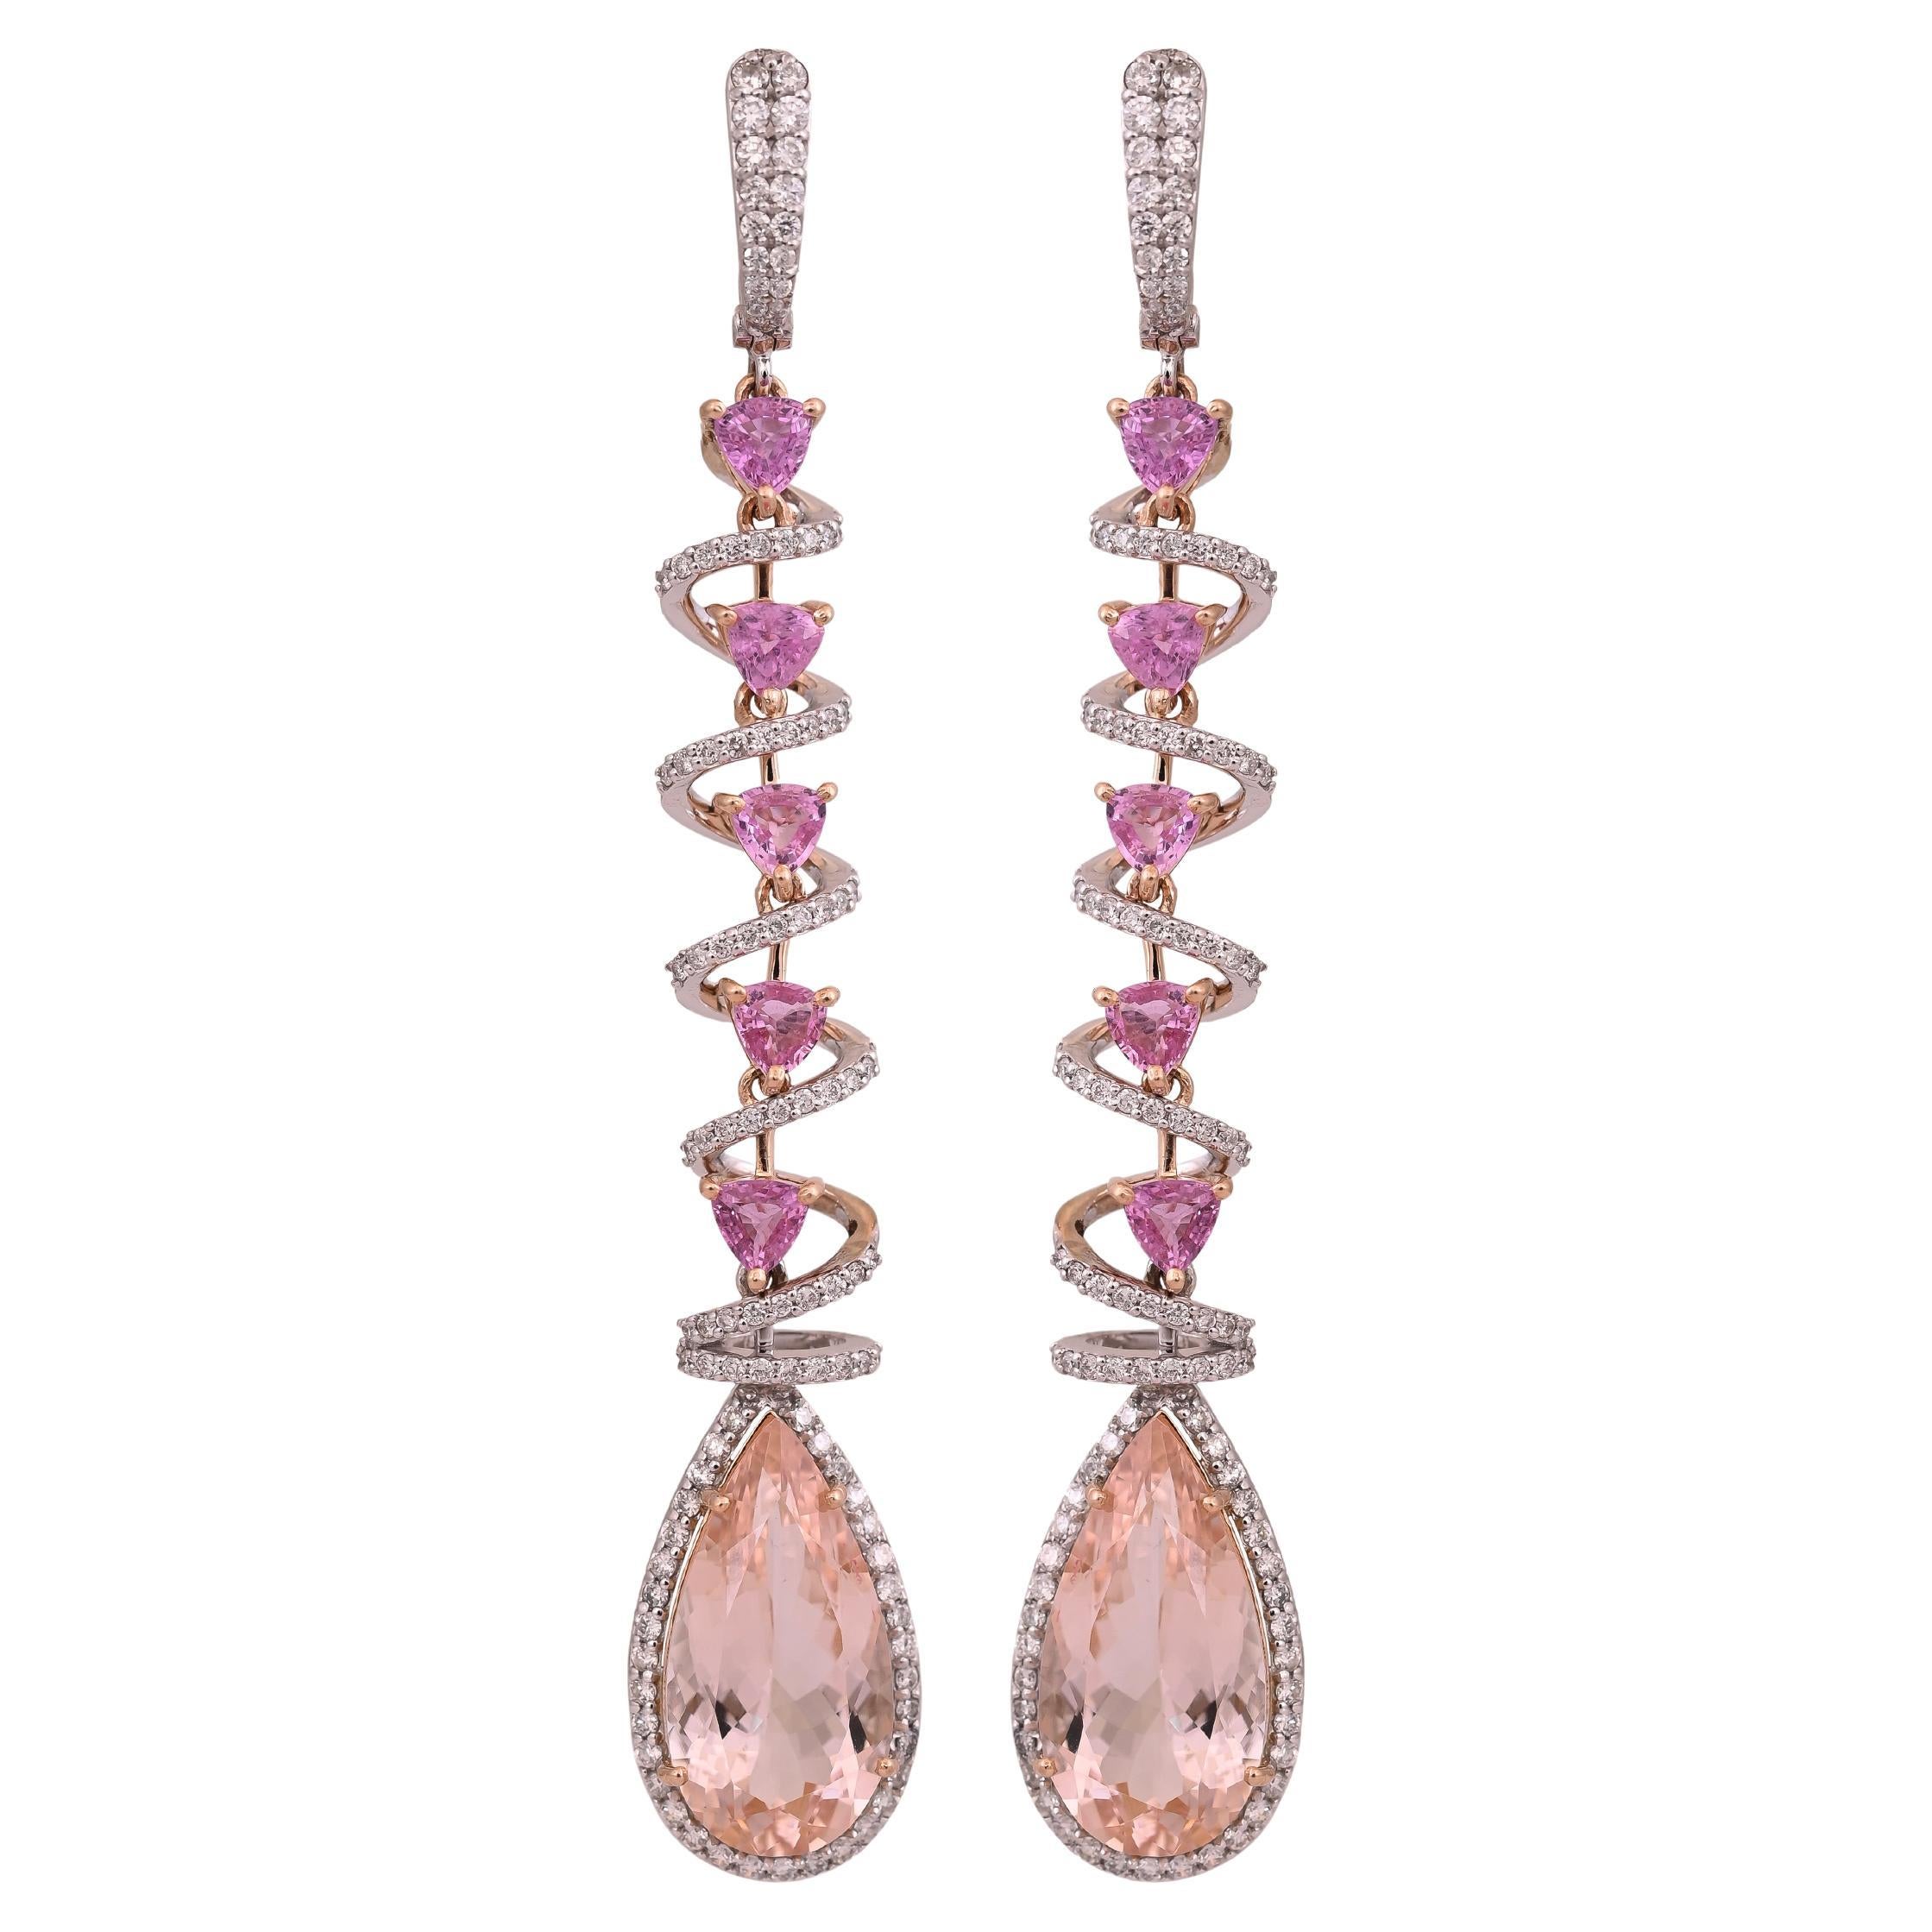 Boucles d'oreilles chandelier en or rose 18 carats, morganite, saphirs roses et diamants